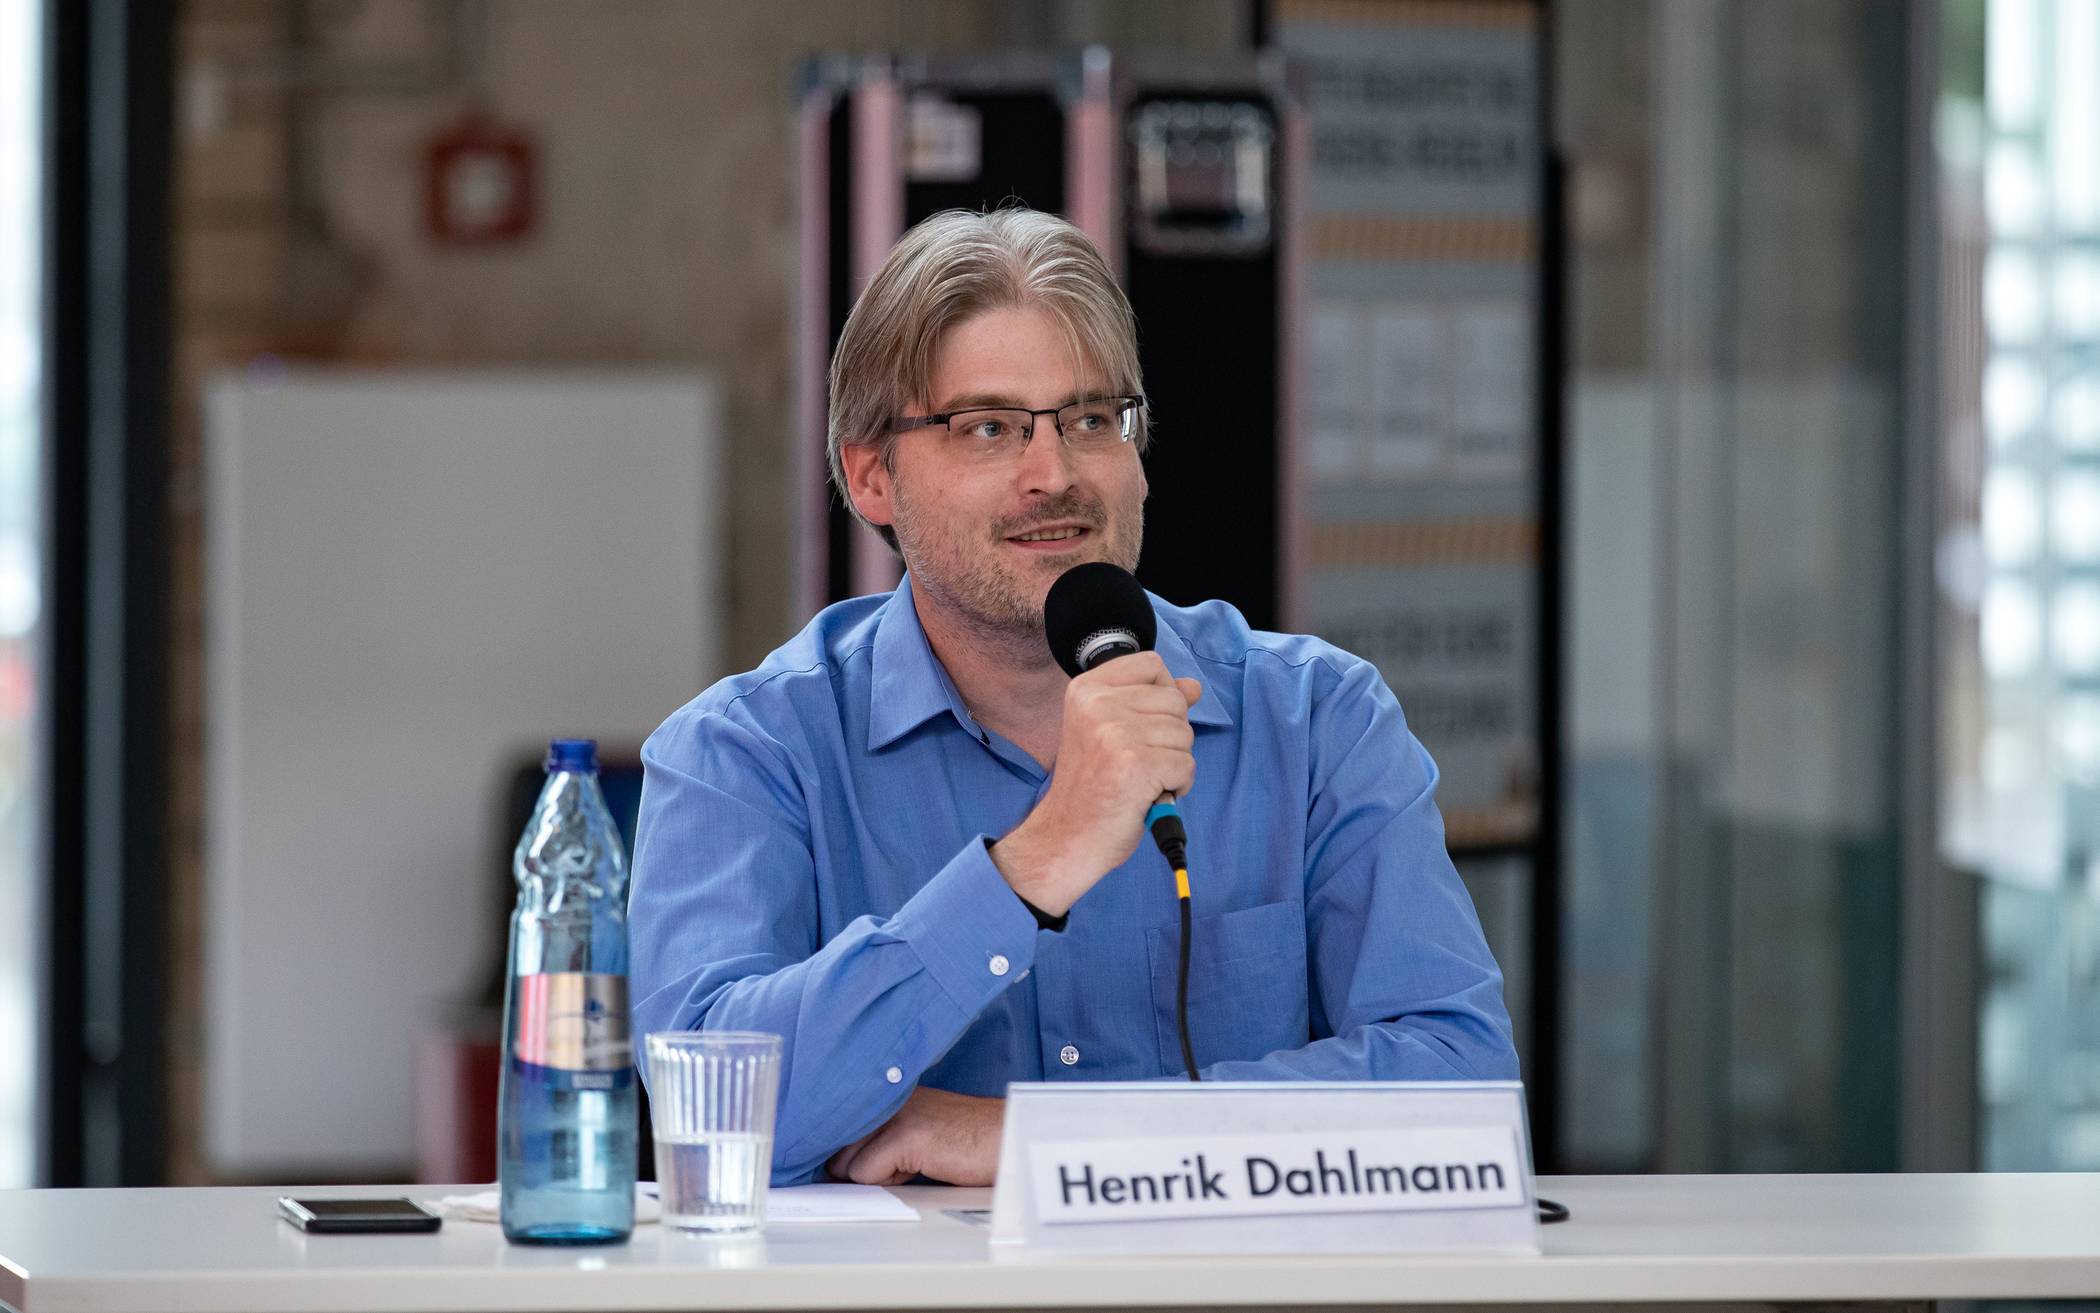 Henrik Dahlmann (Freie Wähler).